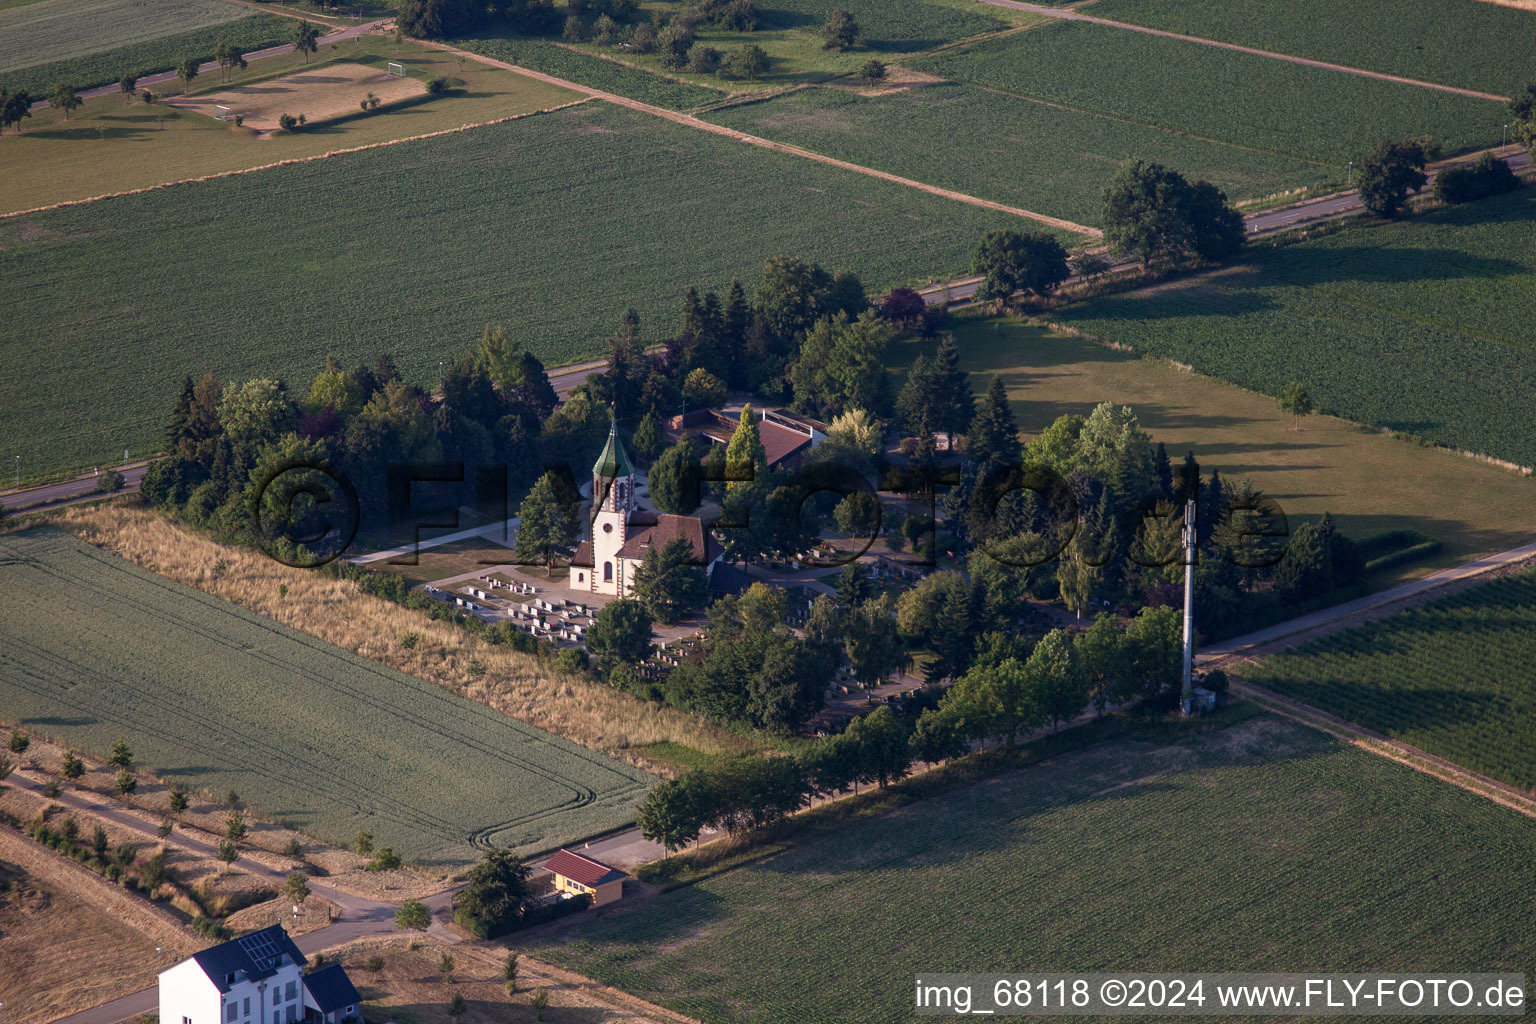 Vue aérienne de Bâtiment d'église à l'extérieur de Mahlberg à Mahlberg dans le département Bade-Wurtemberg, Allemagne